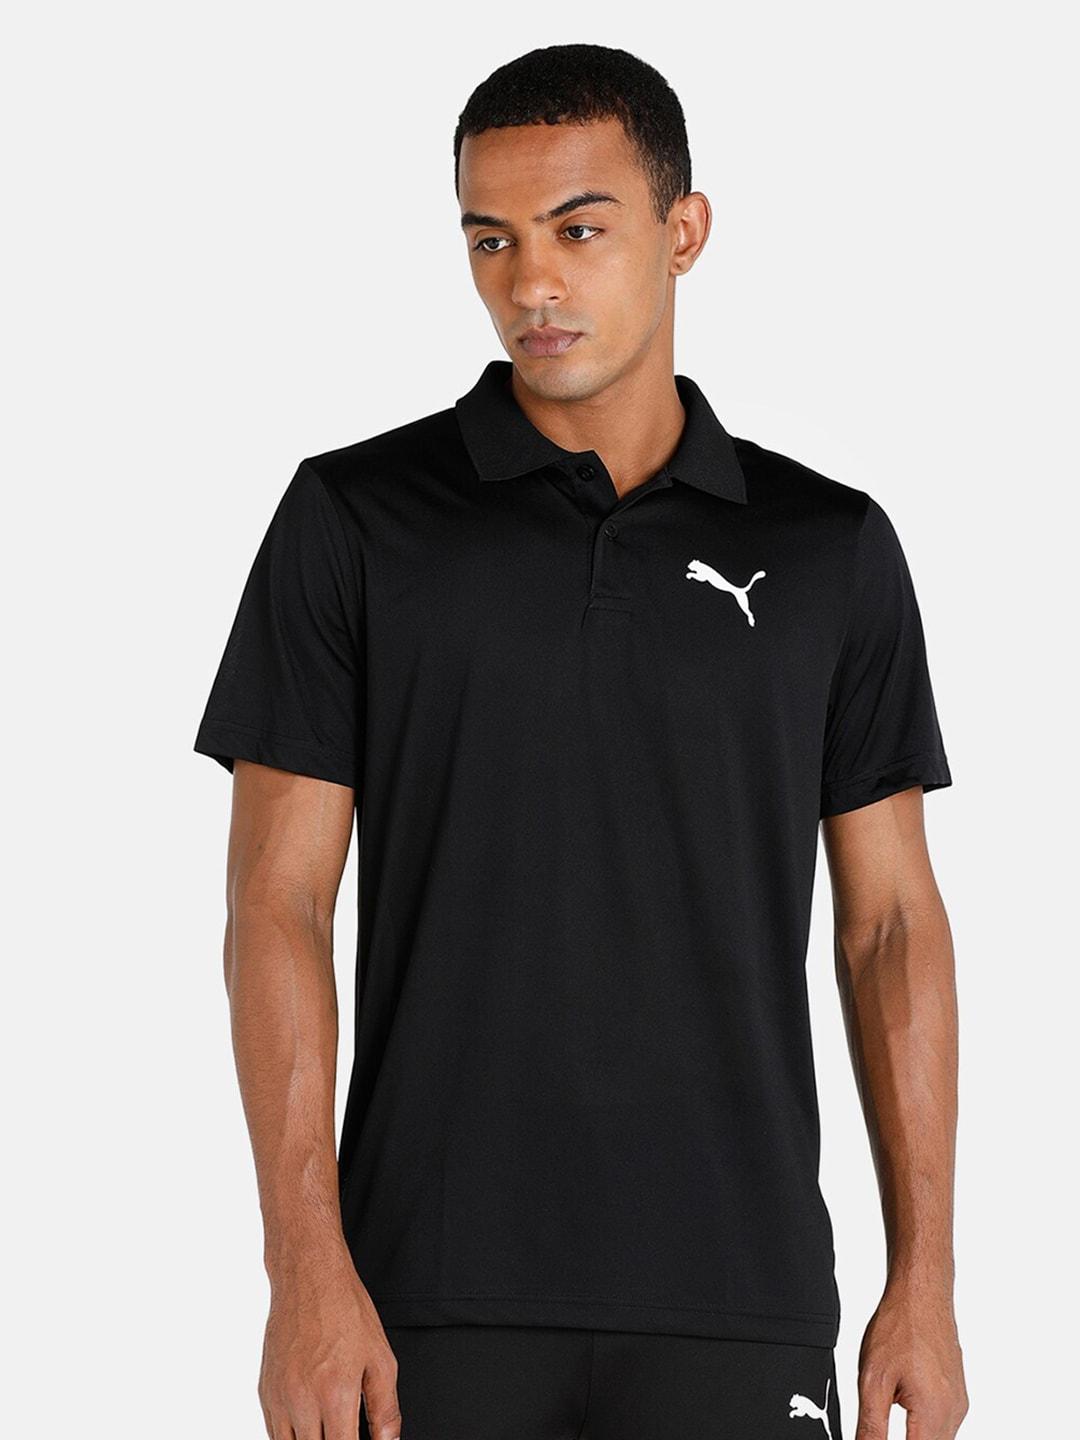 puma-men-black-sports-polo-tshirt